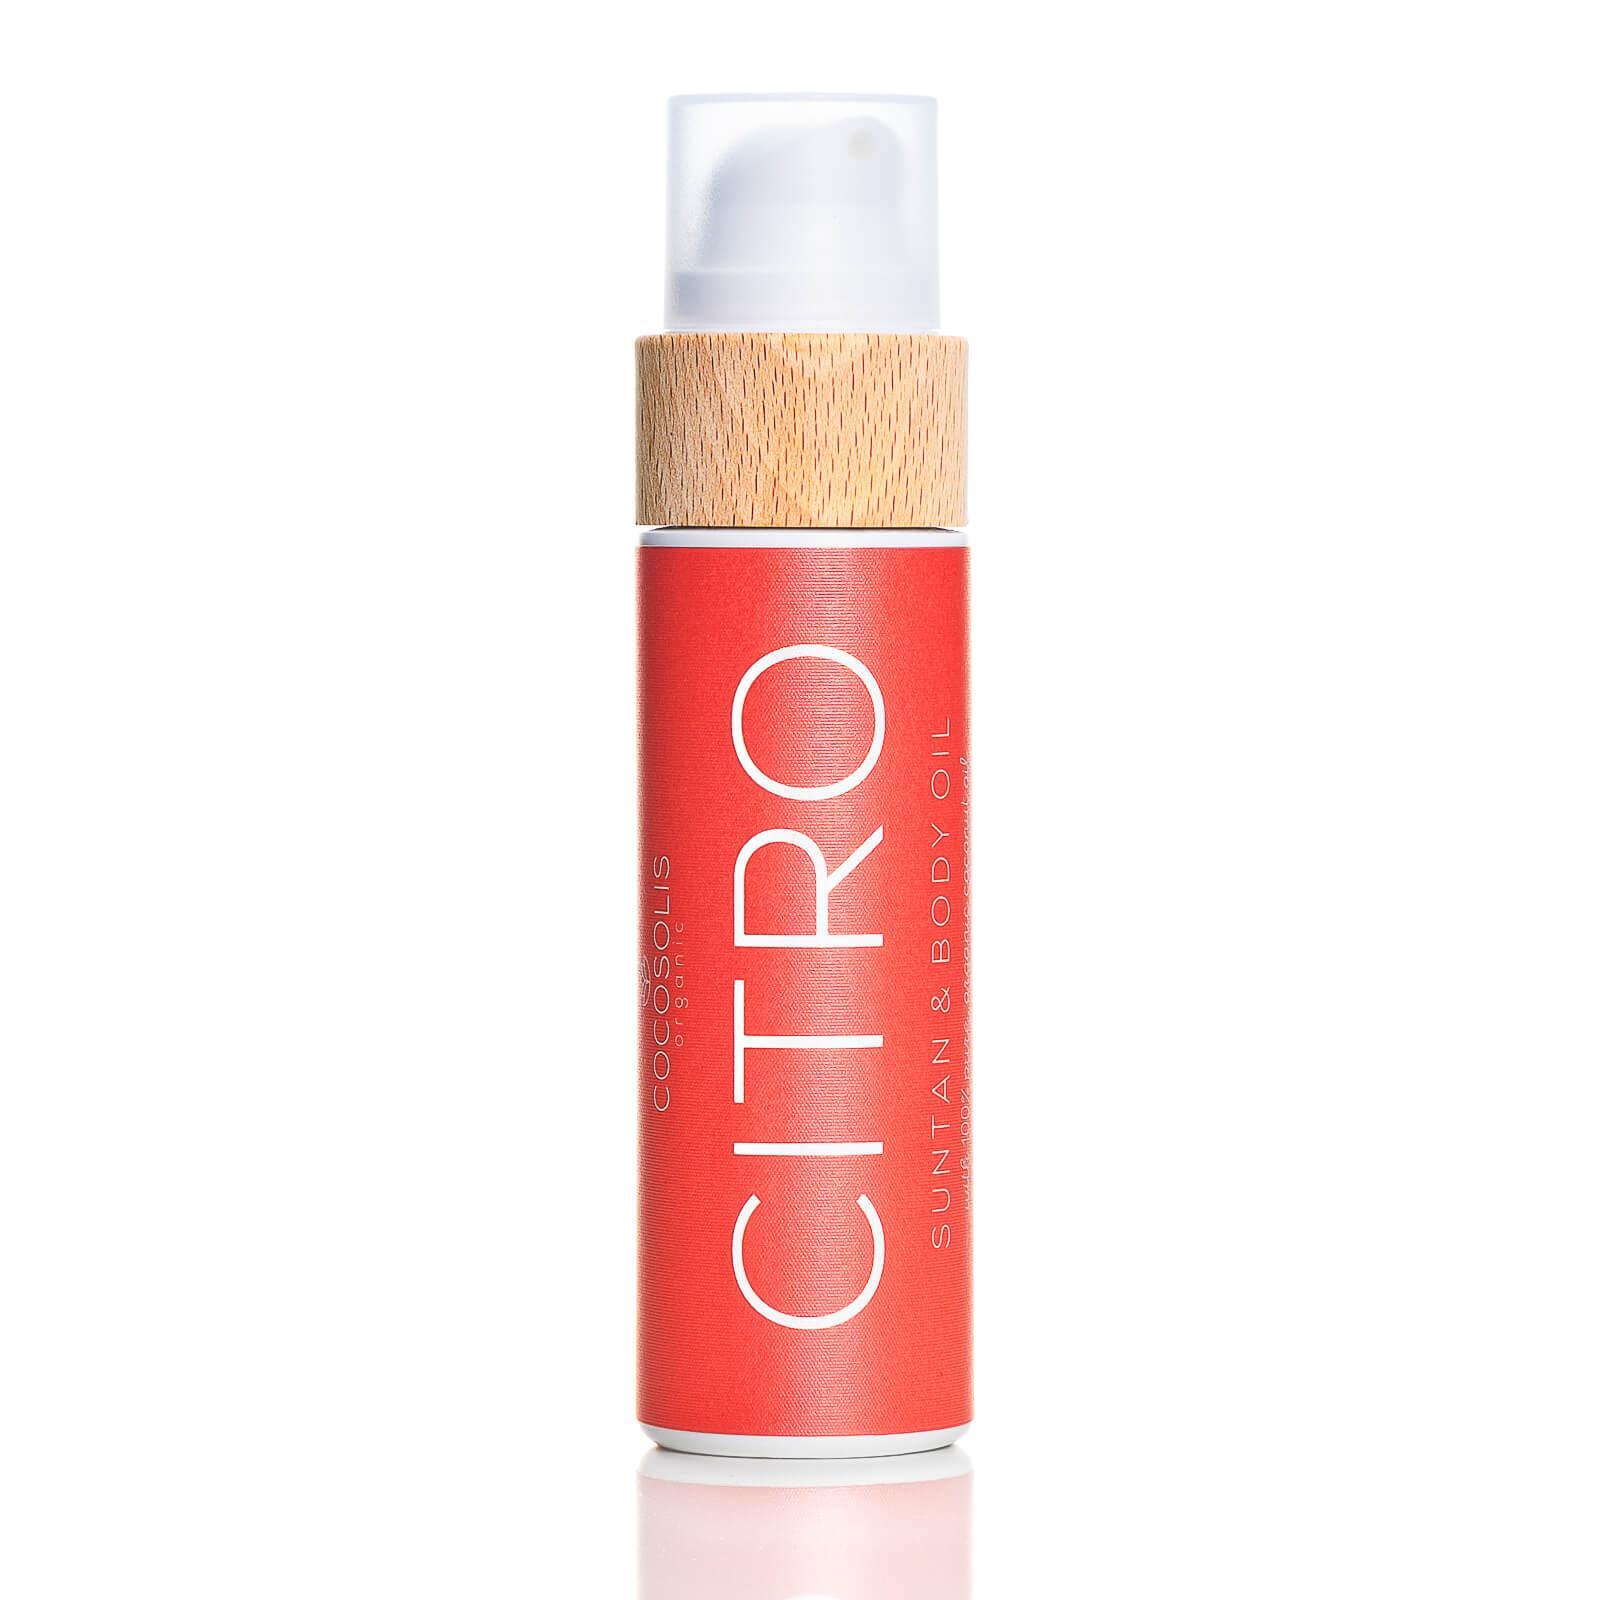 Cocosolis Citro Suntan & Body Oil Био масло за бърз, наситен тен, хидратирана и сияйна кож